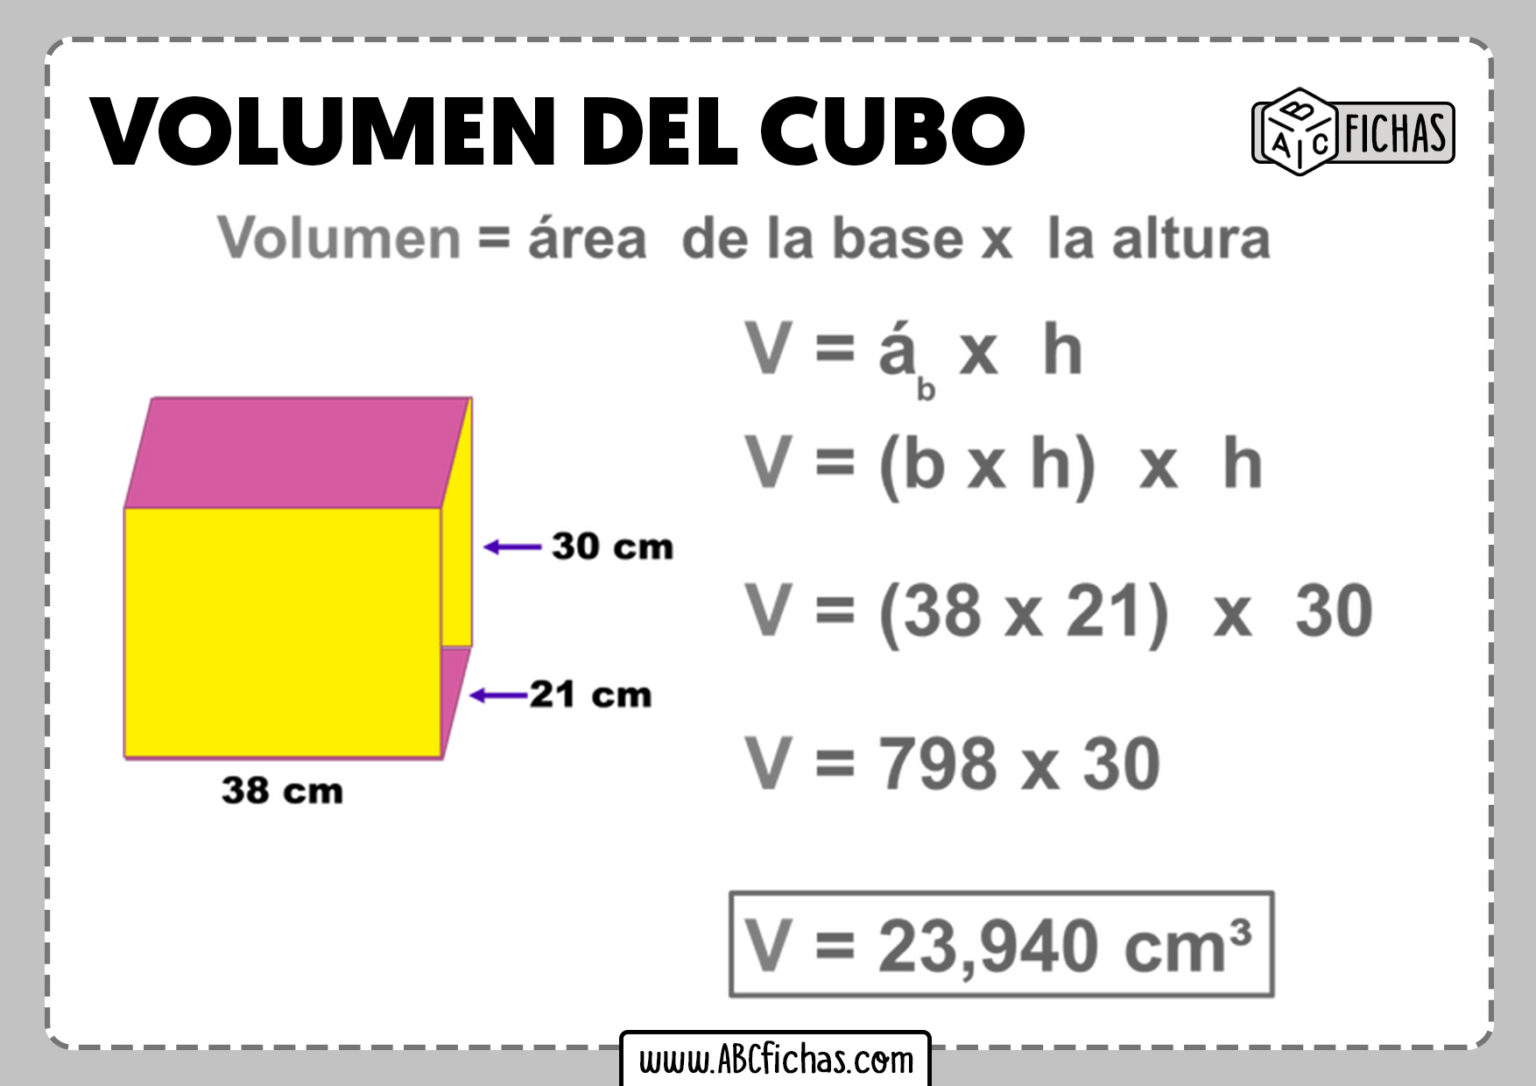 Fórmula Del Volumen Del Cubo Cómo Se Calcula El Volumen Del Cubo